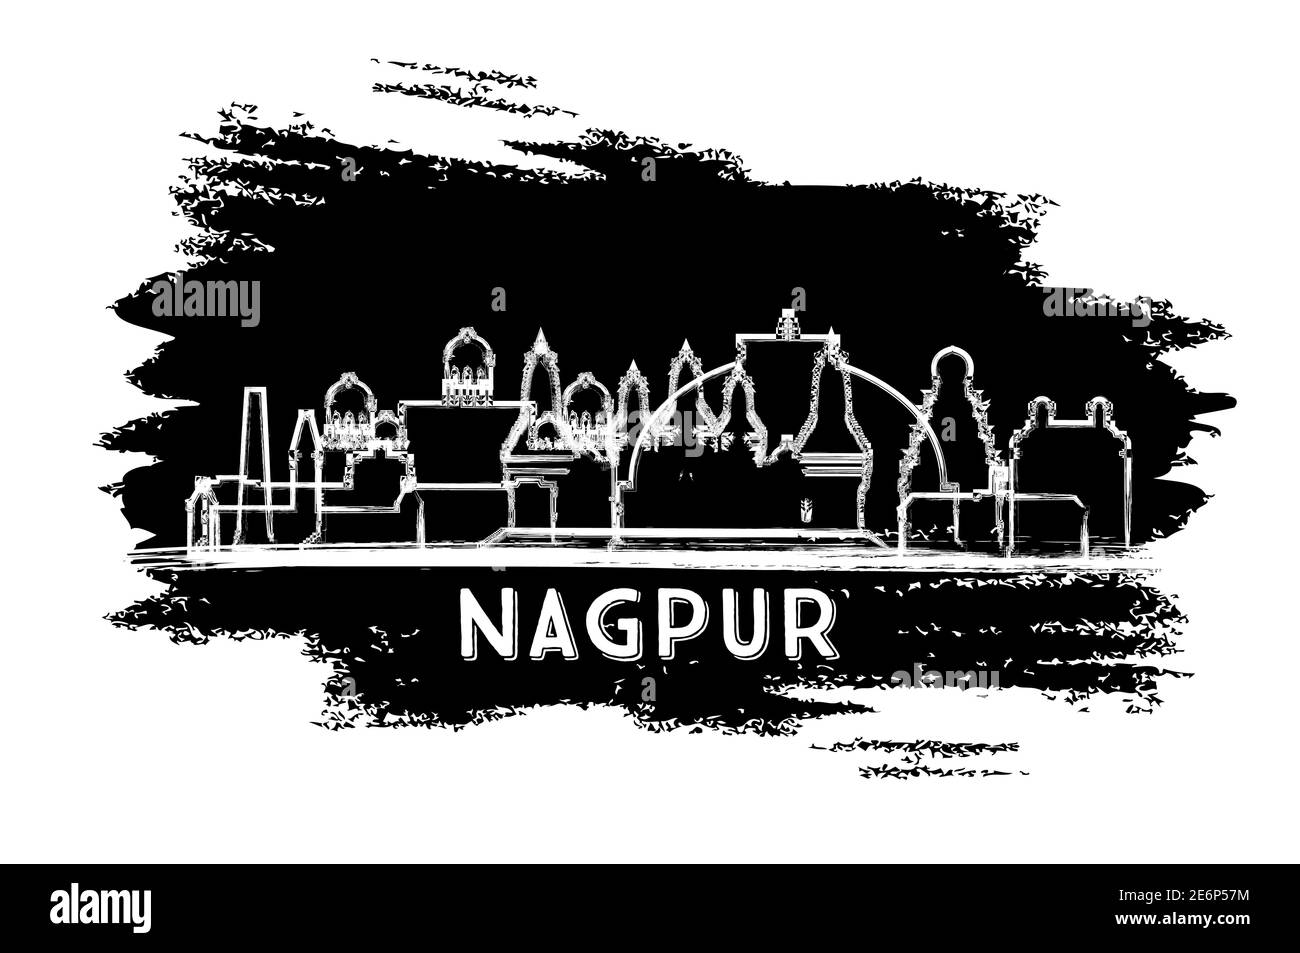 Nagpur India City Skyline Silhouette. Schizzo disegnato a mano. Concetto di viaggio d'affari e turismo con architettura storica. Illustrazione vettoriale. Illustrazione Vettoriale